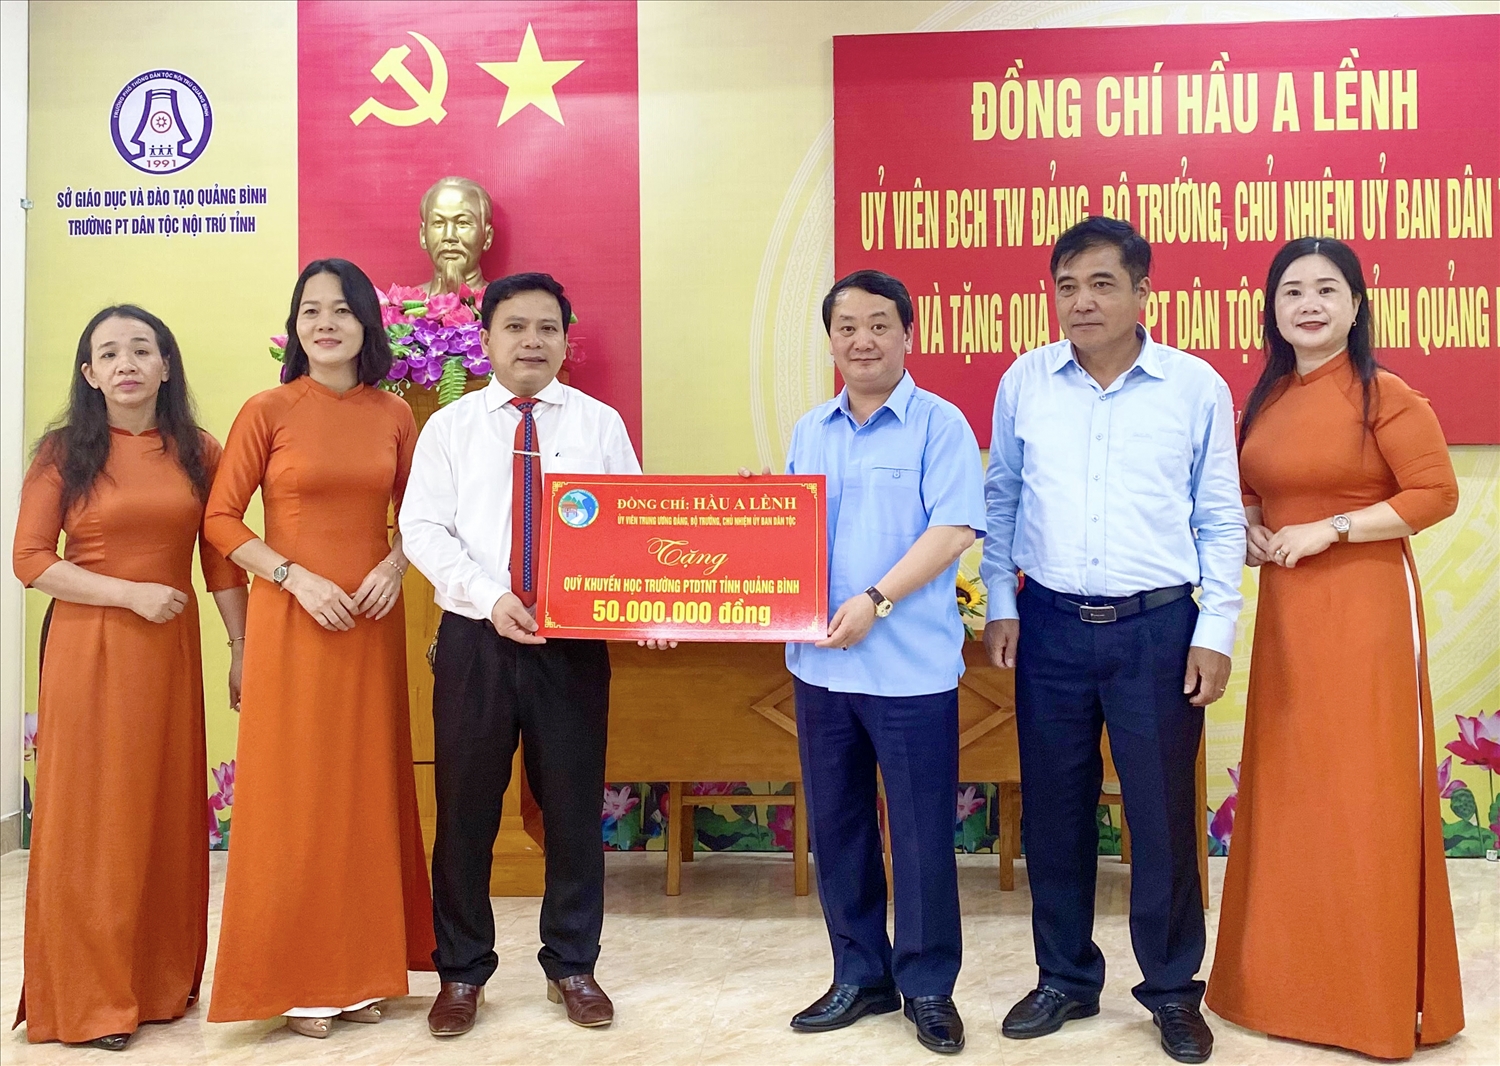 Bộ trương, Chủ nhiệm UBDT Hầu A Lềnh tặng 50 triệu đồng cho Quỹ khuyến học Trường PTDTNT tỉnh Quảng Bình